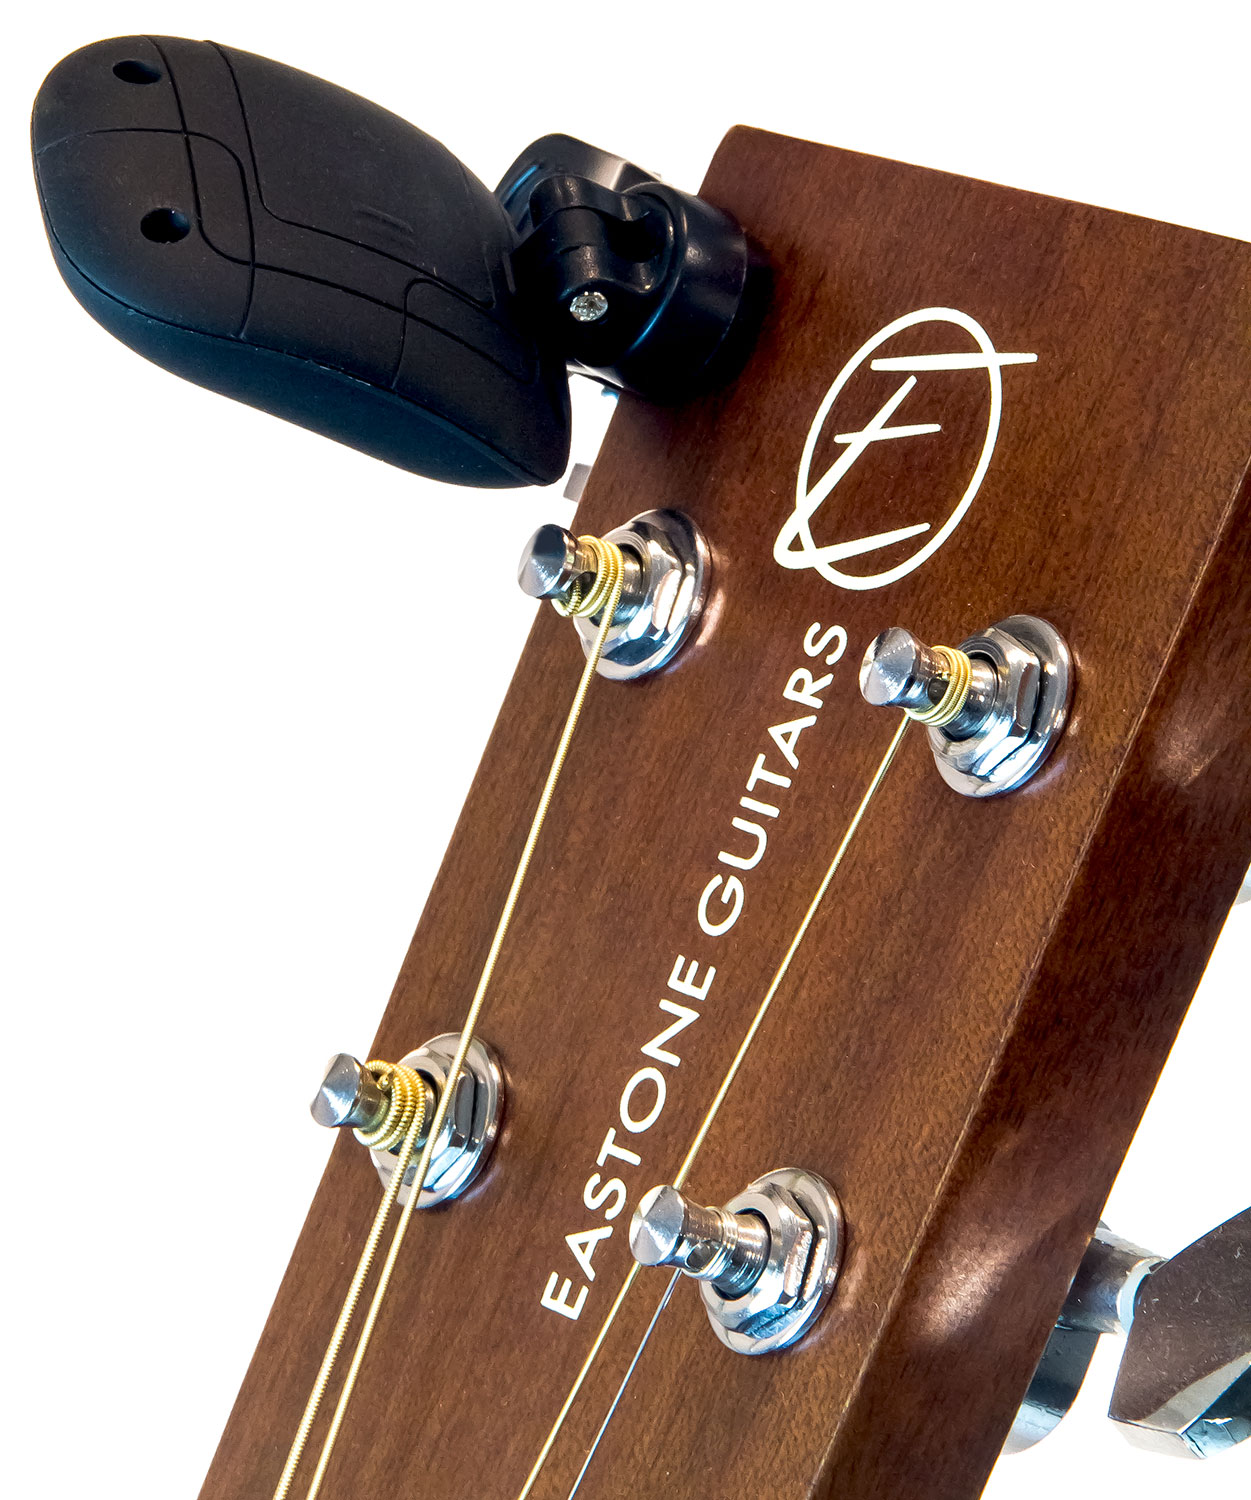 X-tone 3110 Clip-on Tuner Pince - Stimmgerät für Gitarre - Variation 7